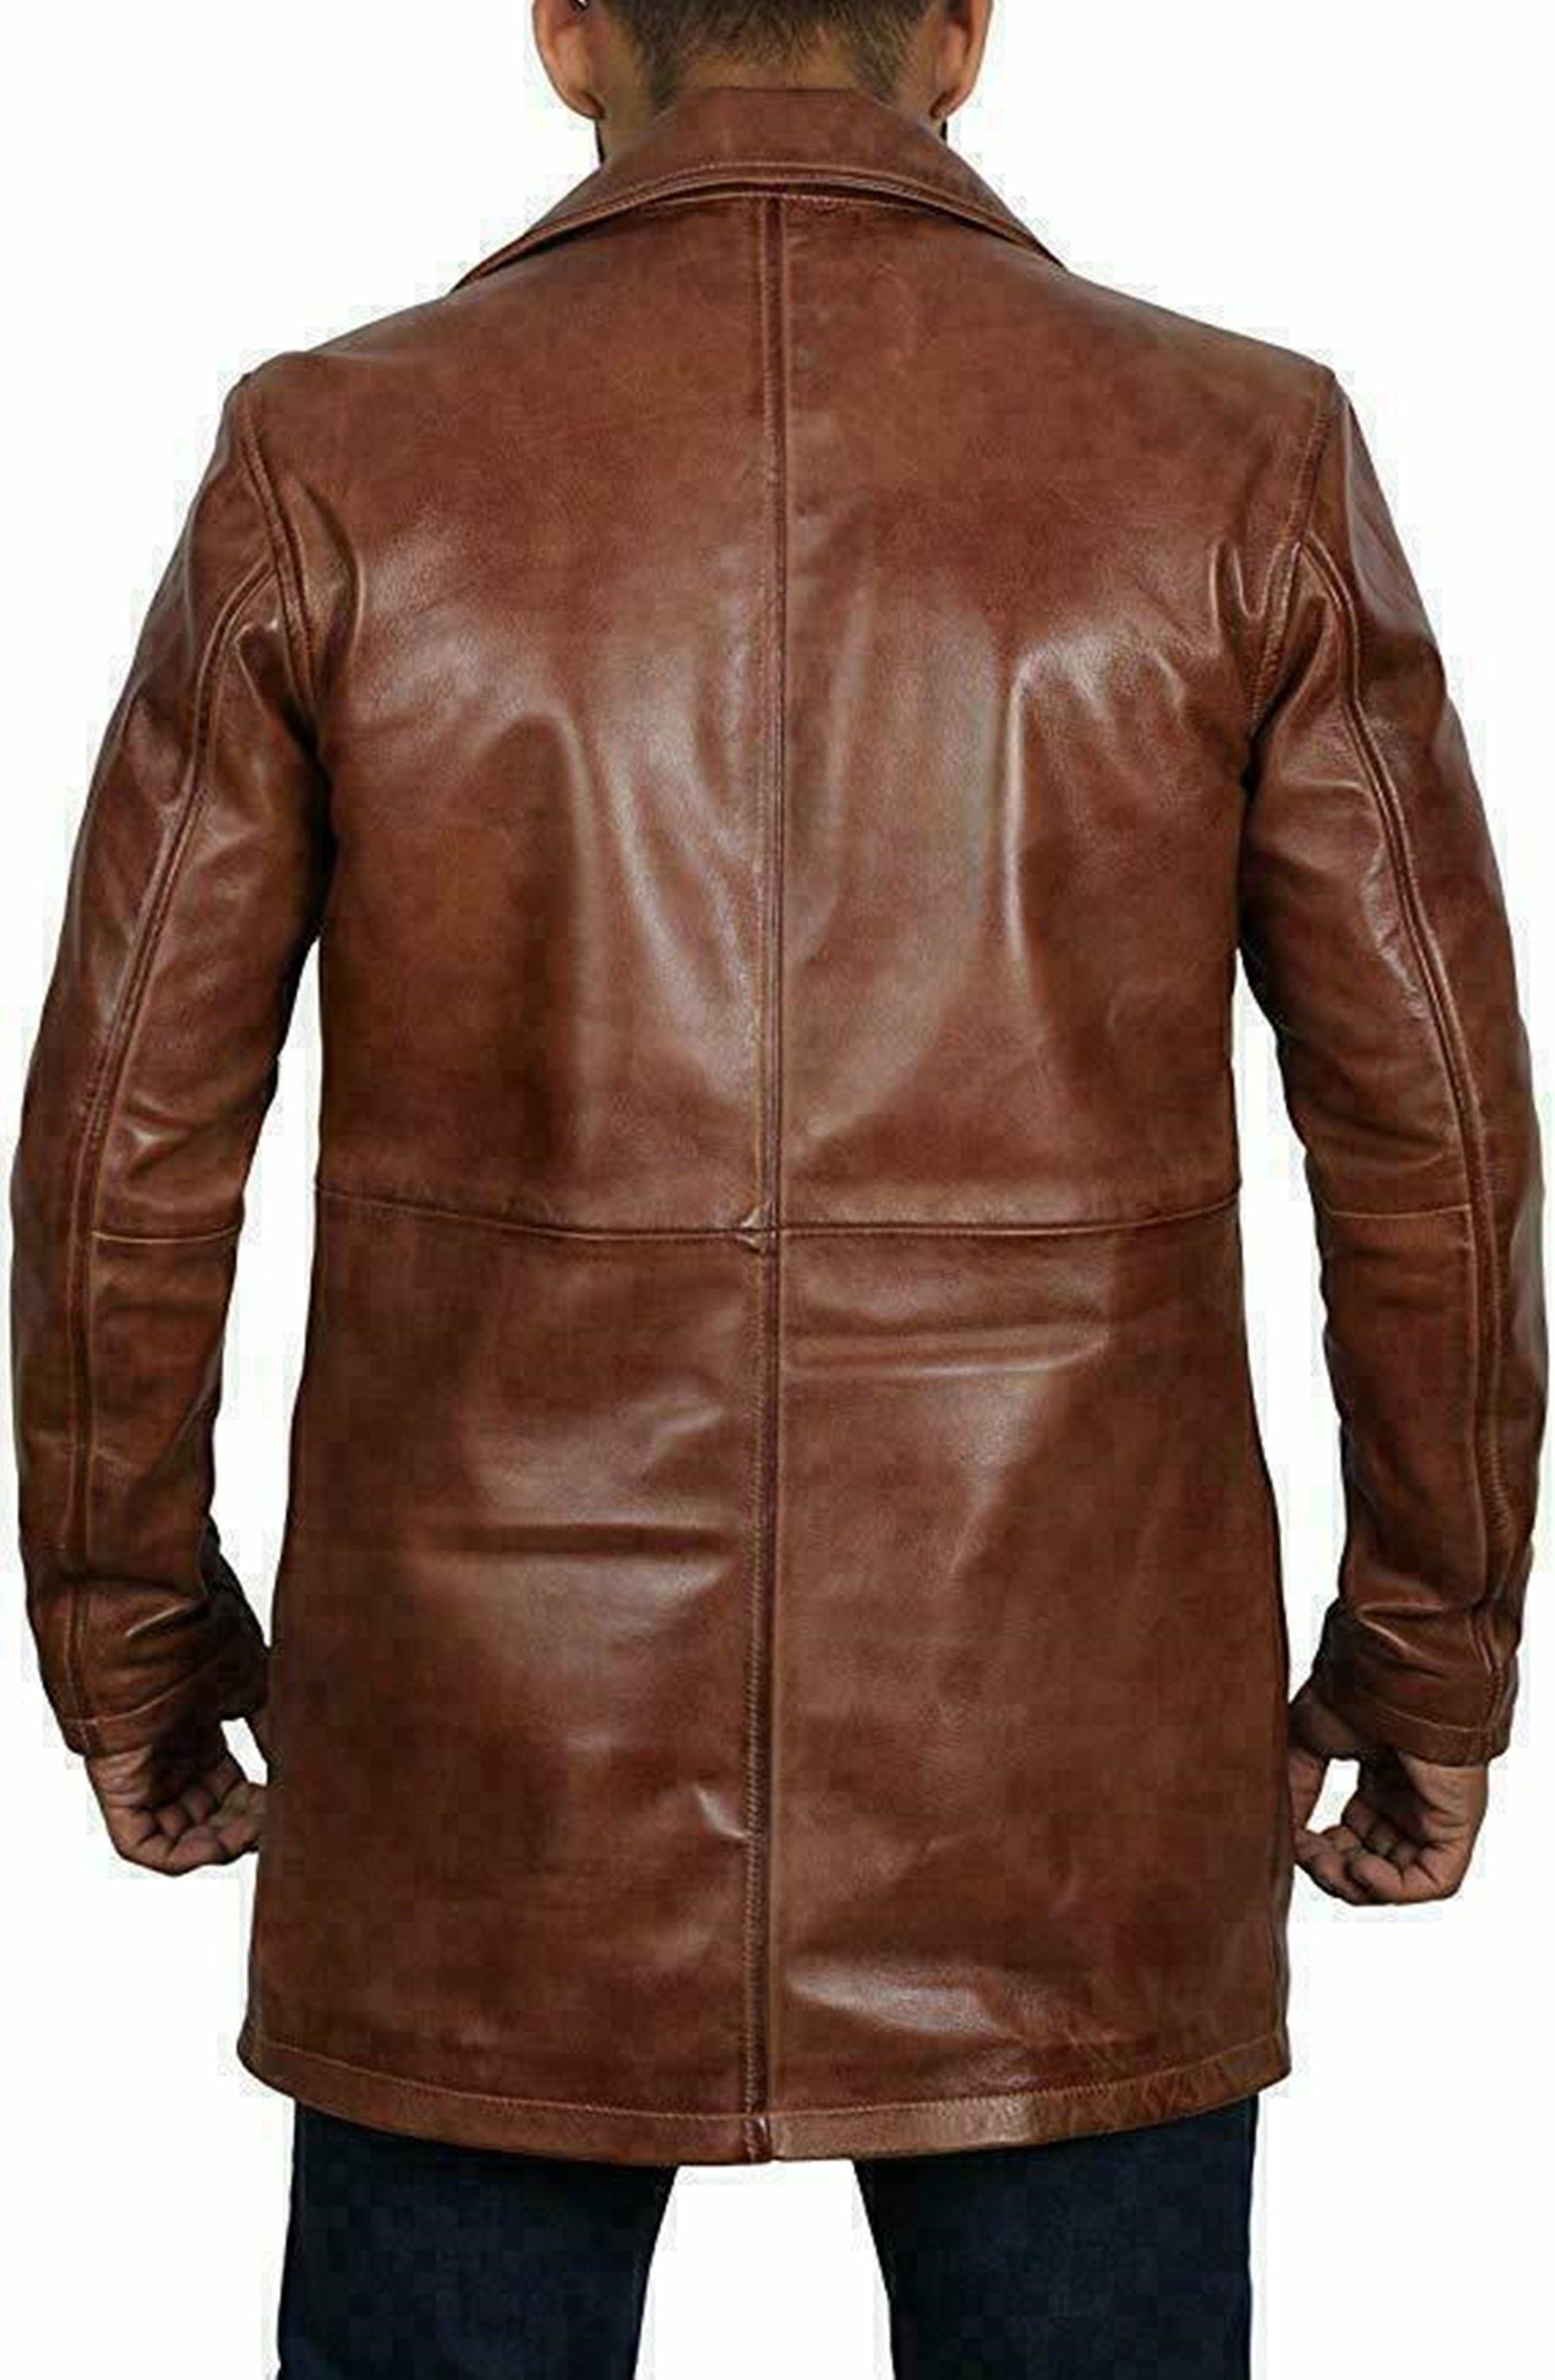 Handmade Leather Trench Coat Men's Winter Coat